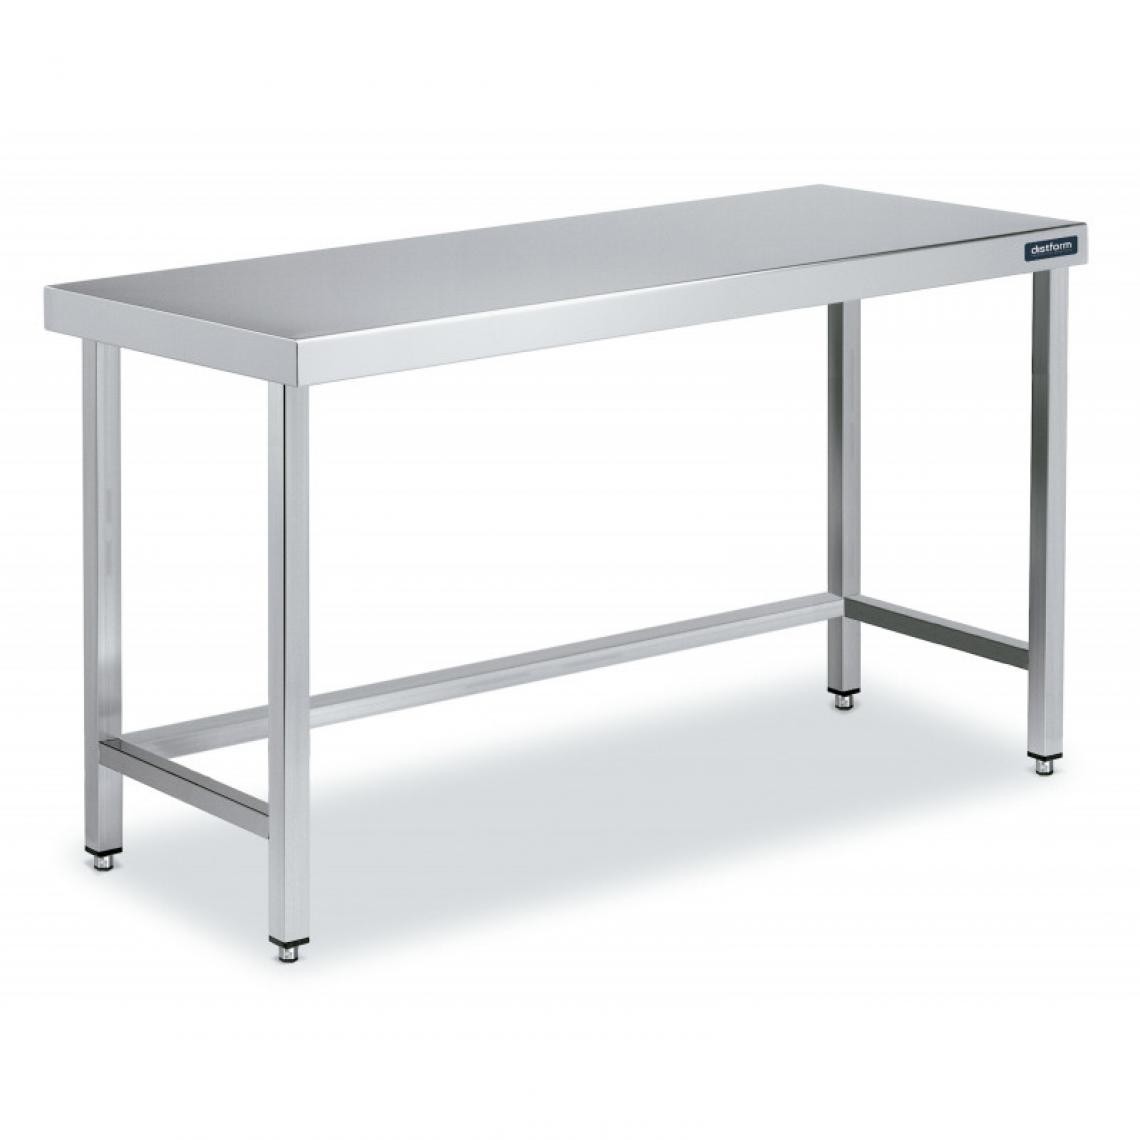 DISTFORM - Table Centrale en Inox avec renforts Profondeur 600mm - Distform - Acier inoxydable1600x600 - Tables à manger